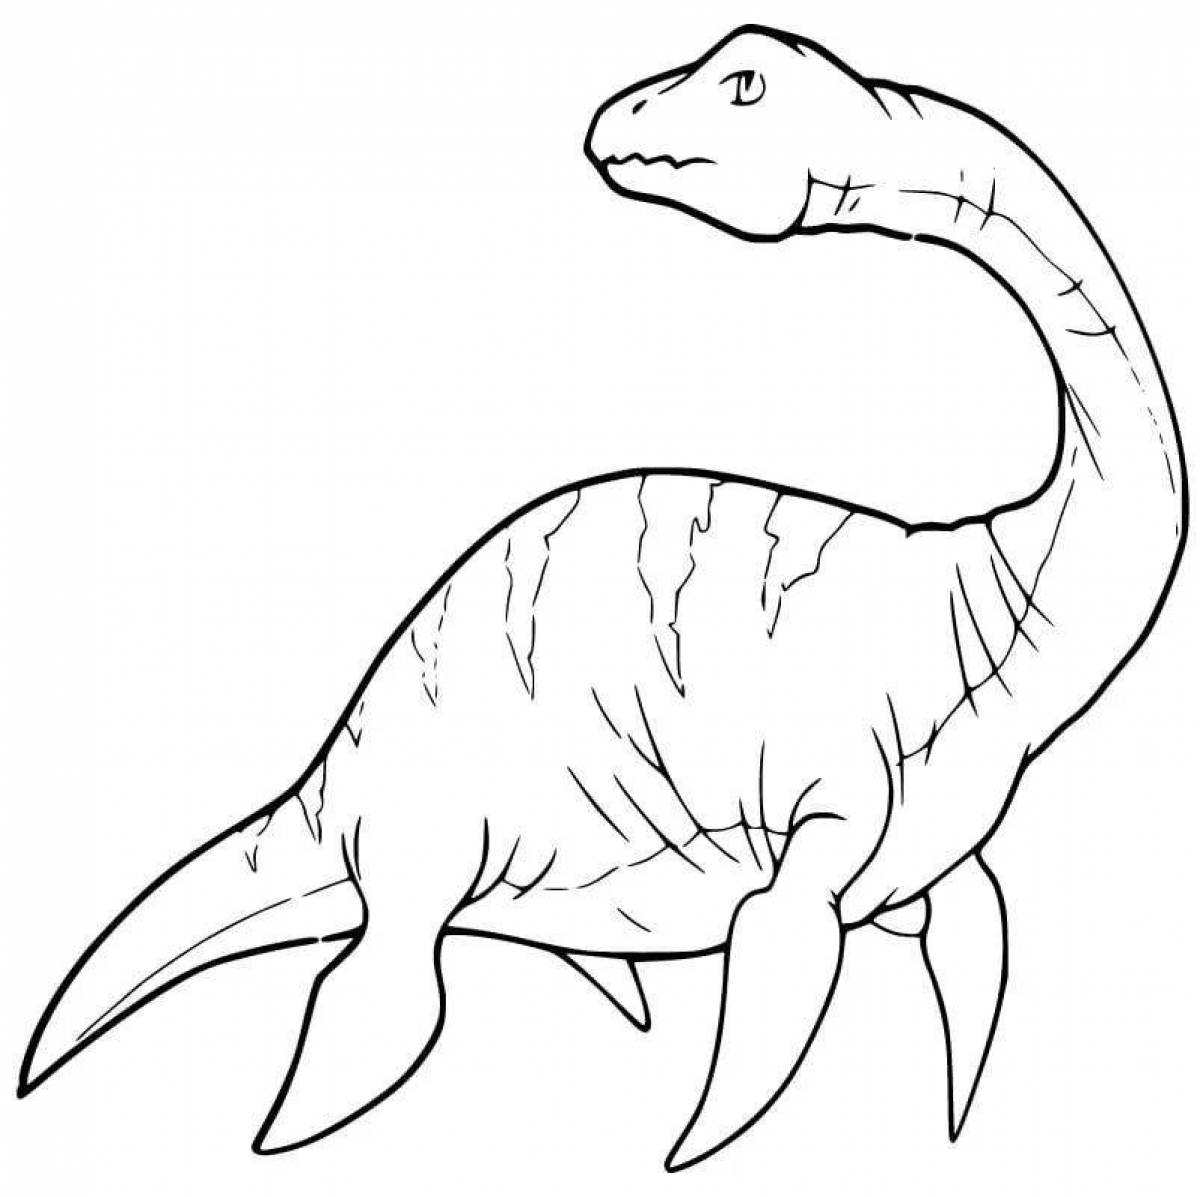 Динамическая раскраска плезиозавра